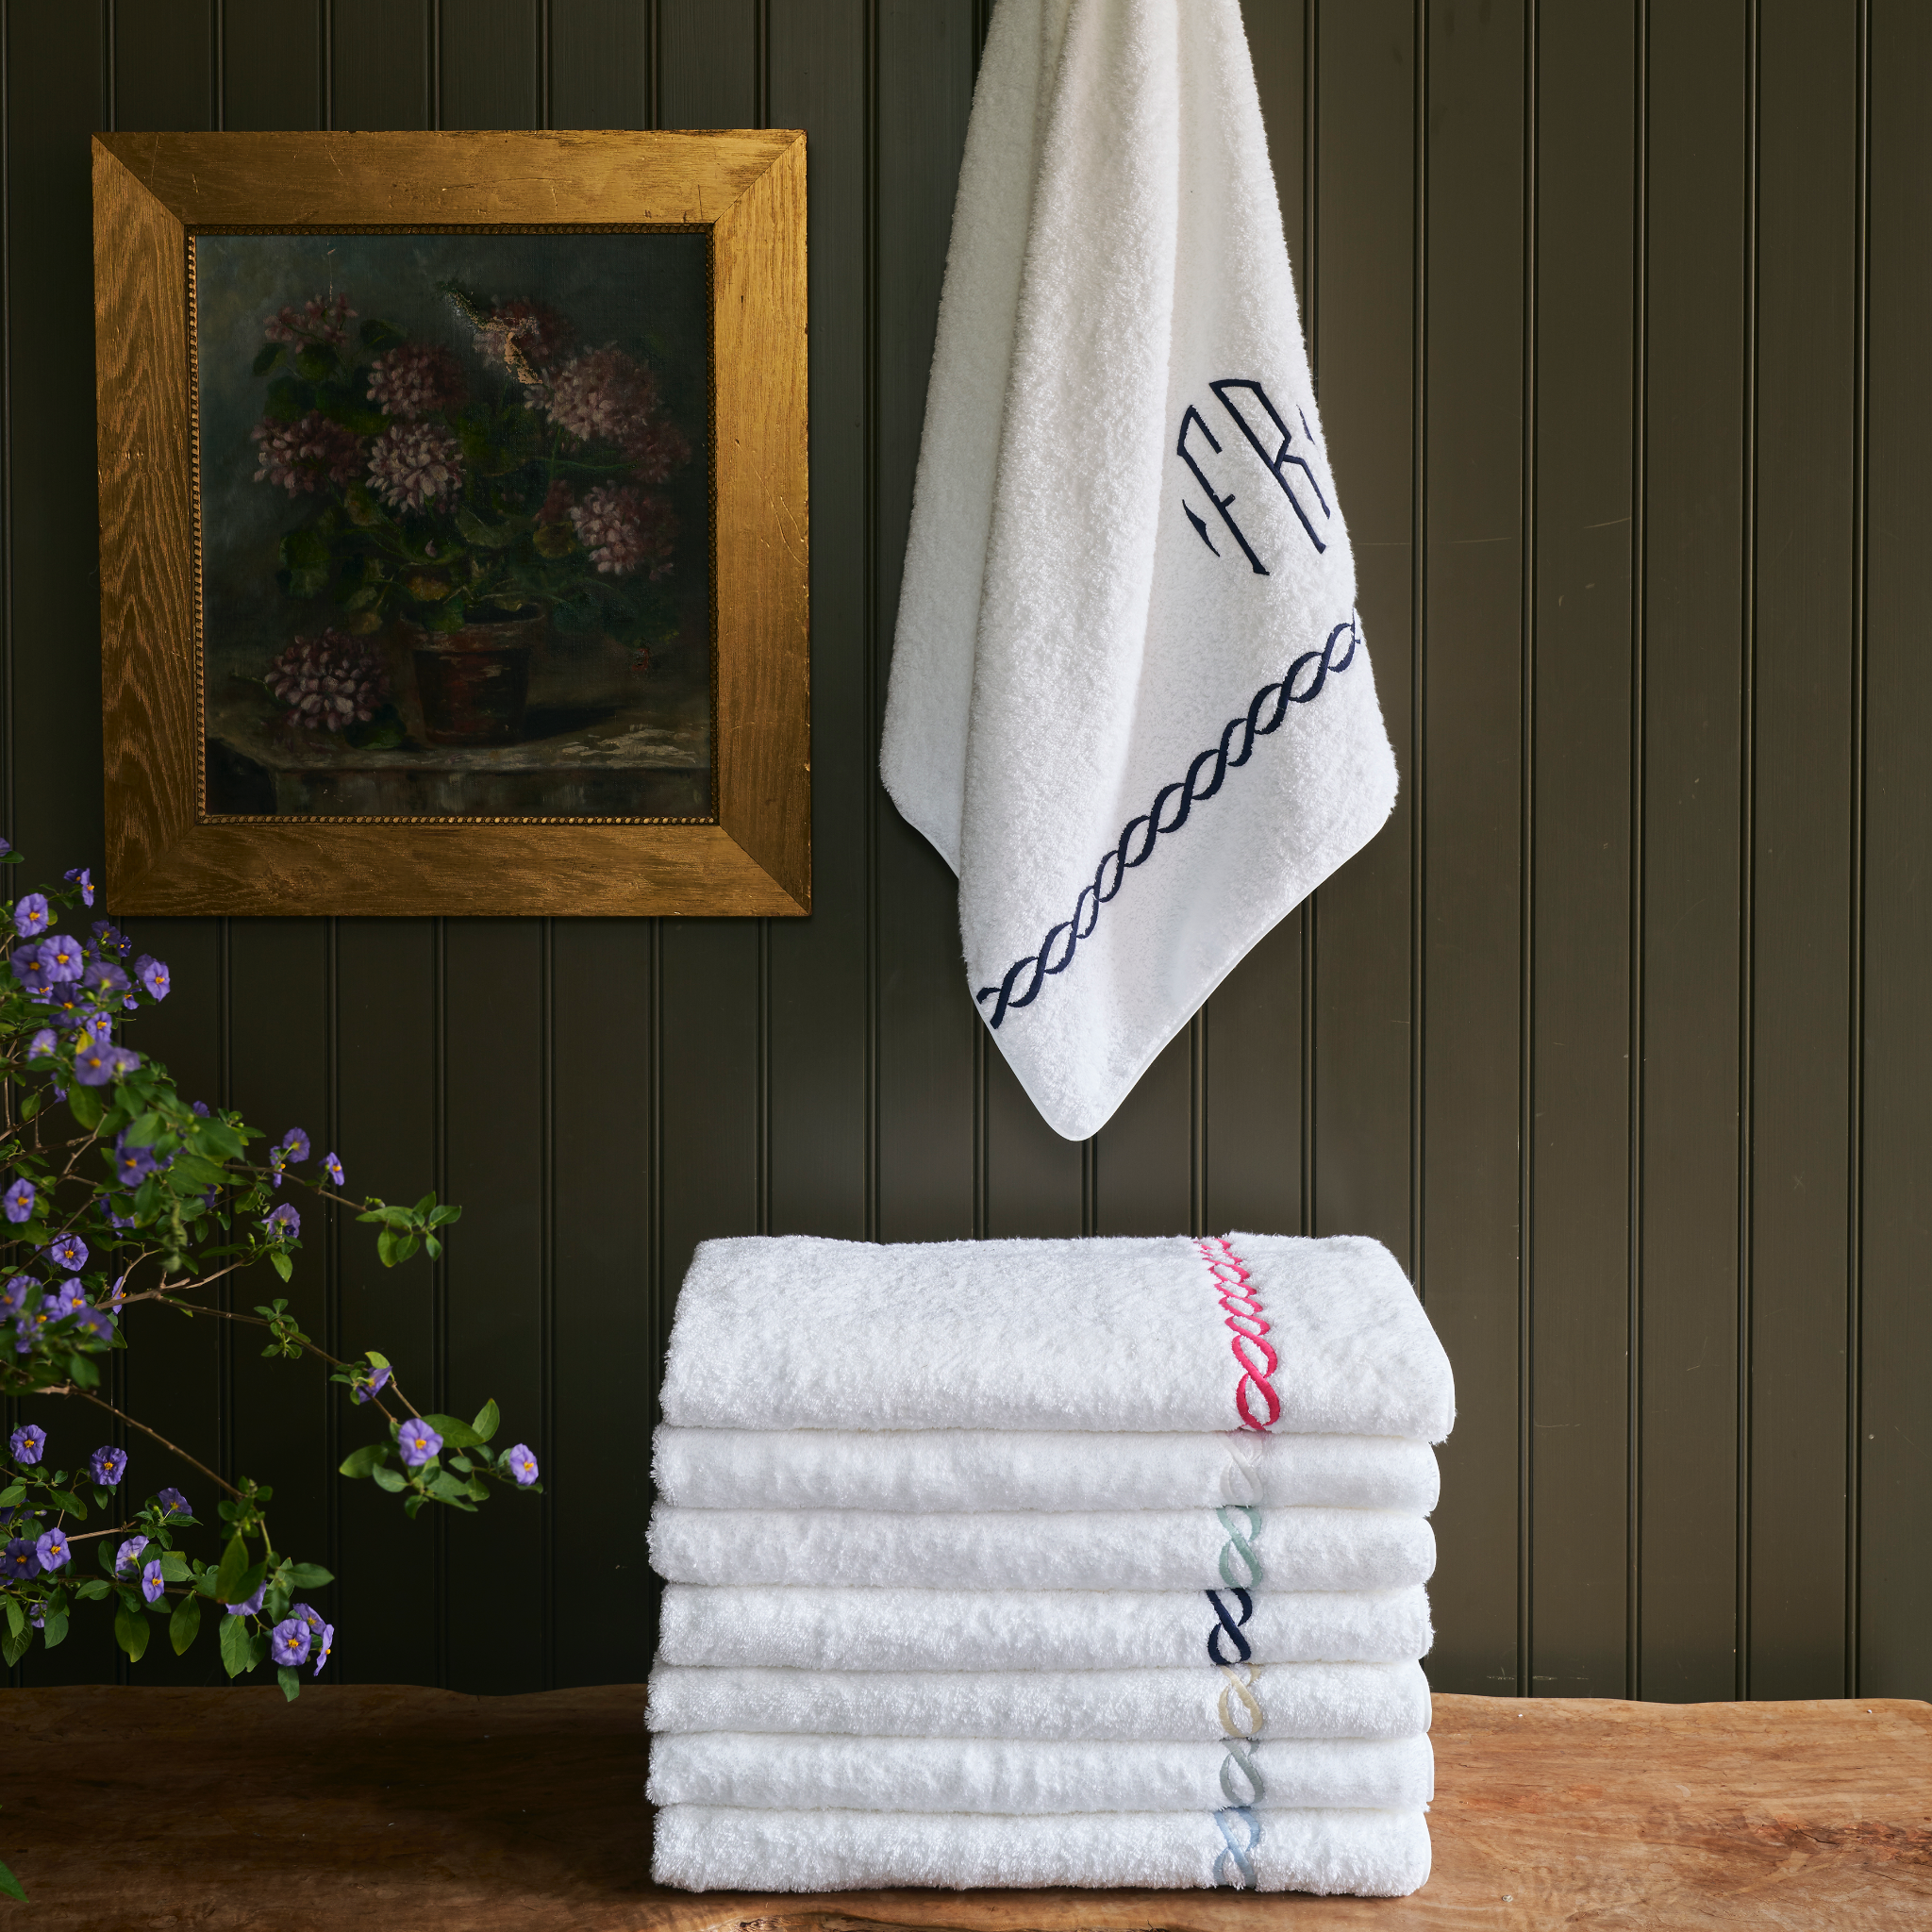 https://flandb.com/cdn/shop/files/Matouk-Classic-Chain-Luxury-Bath-Towels-Stack-Assorted-Colors_2048x.png?v=1685330974